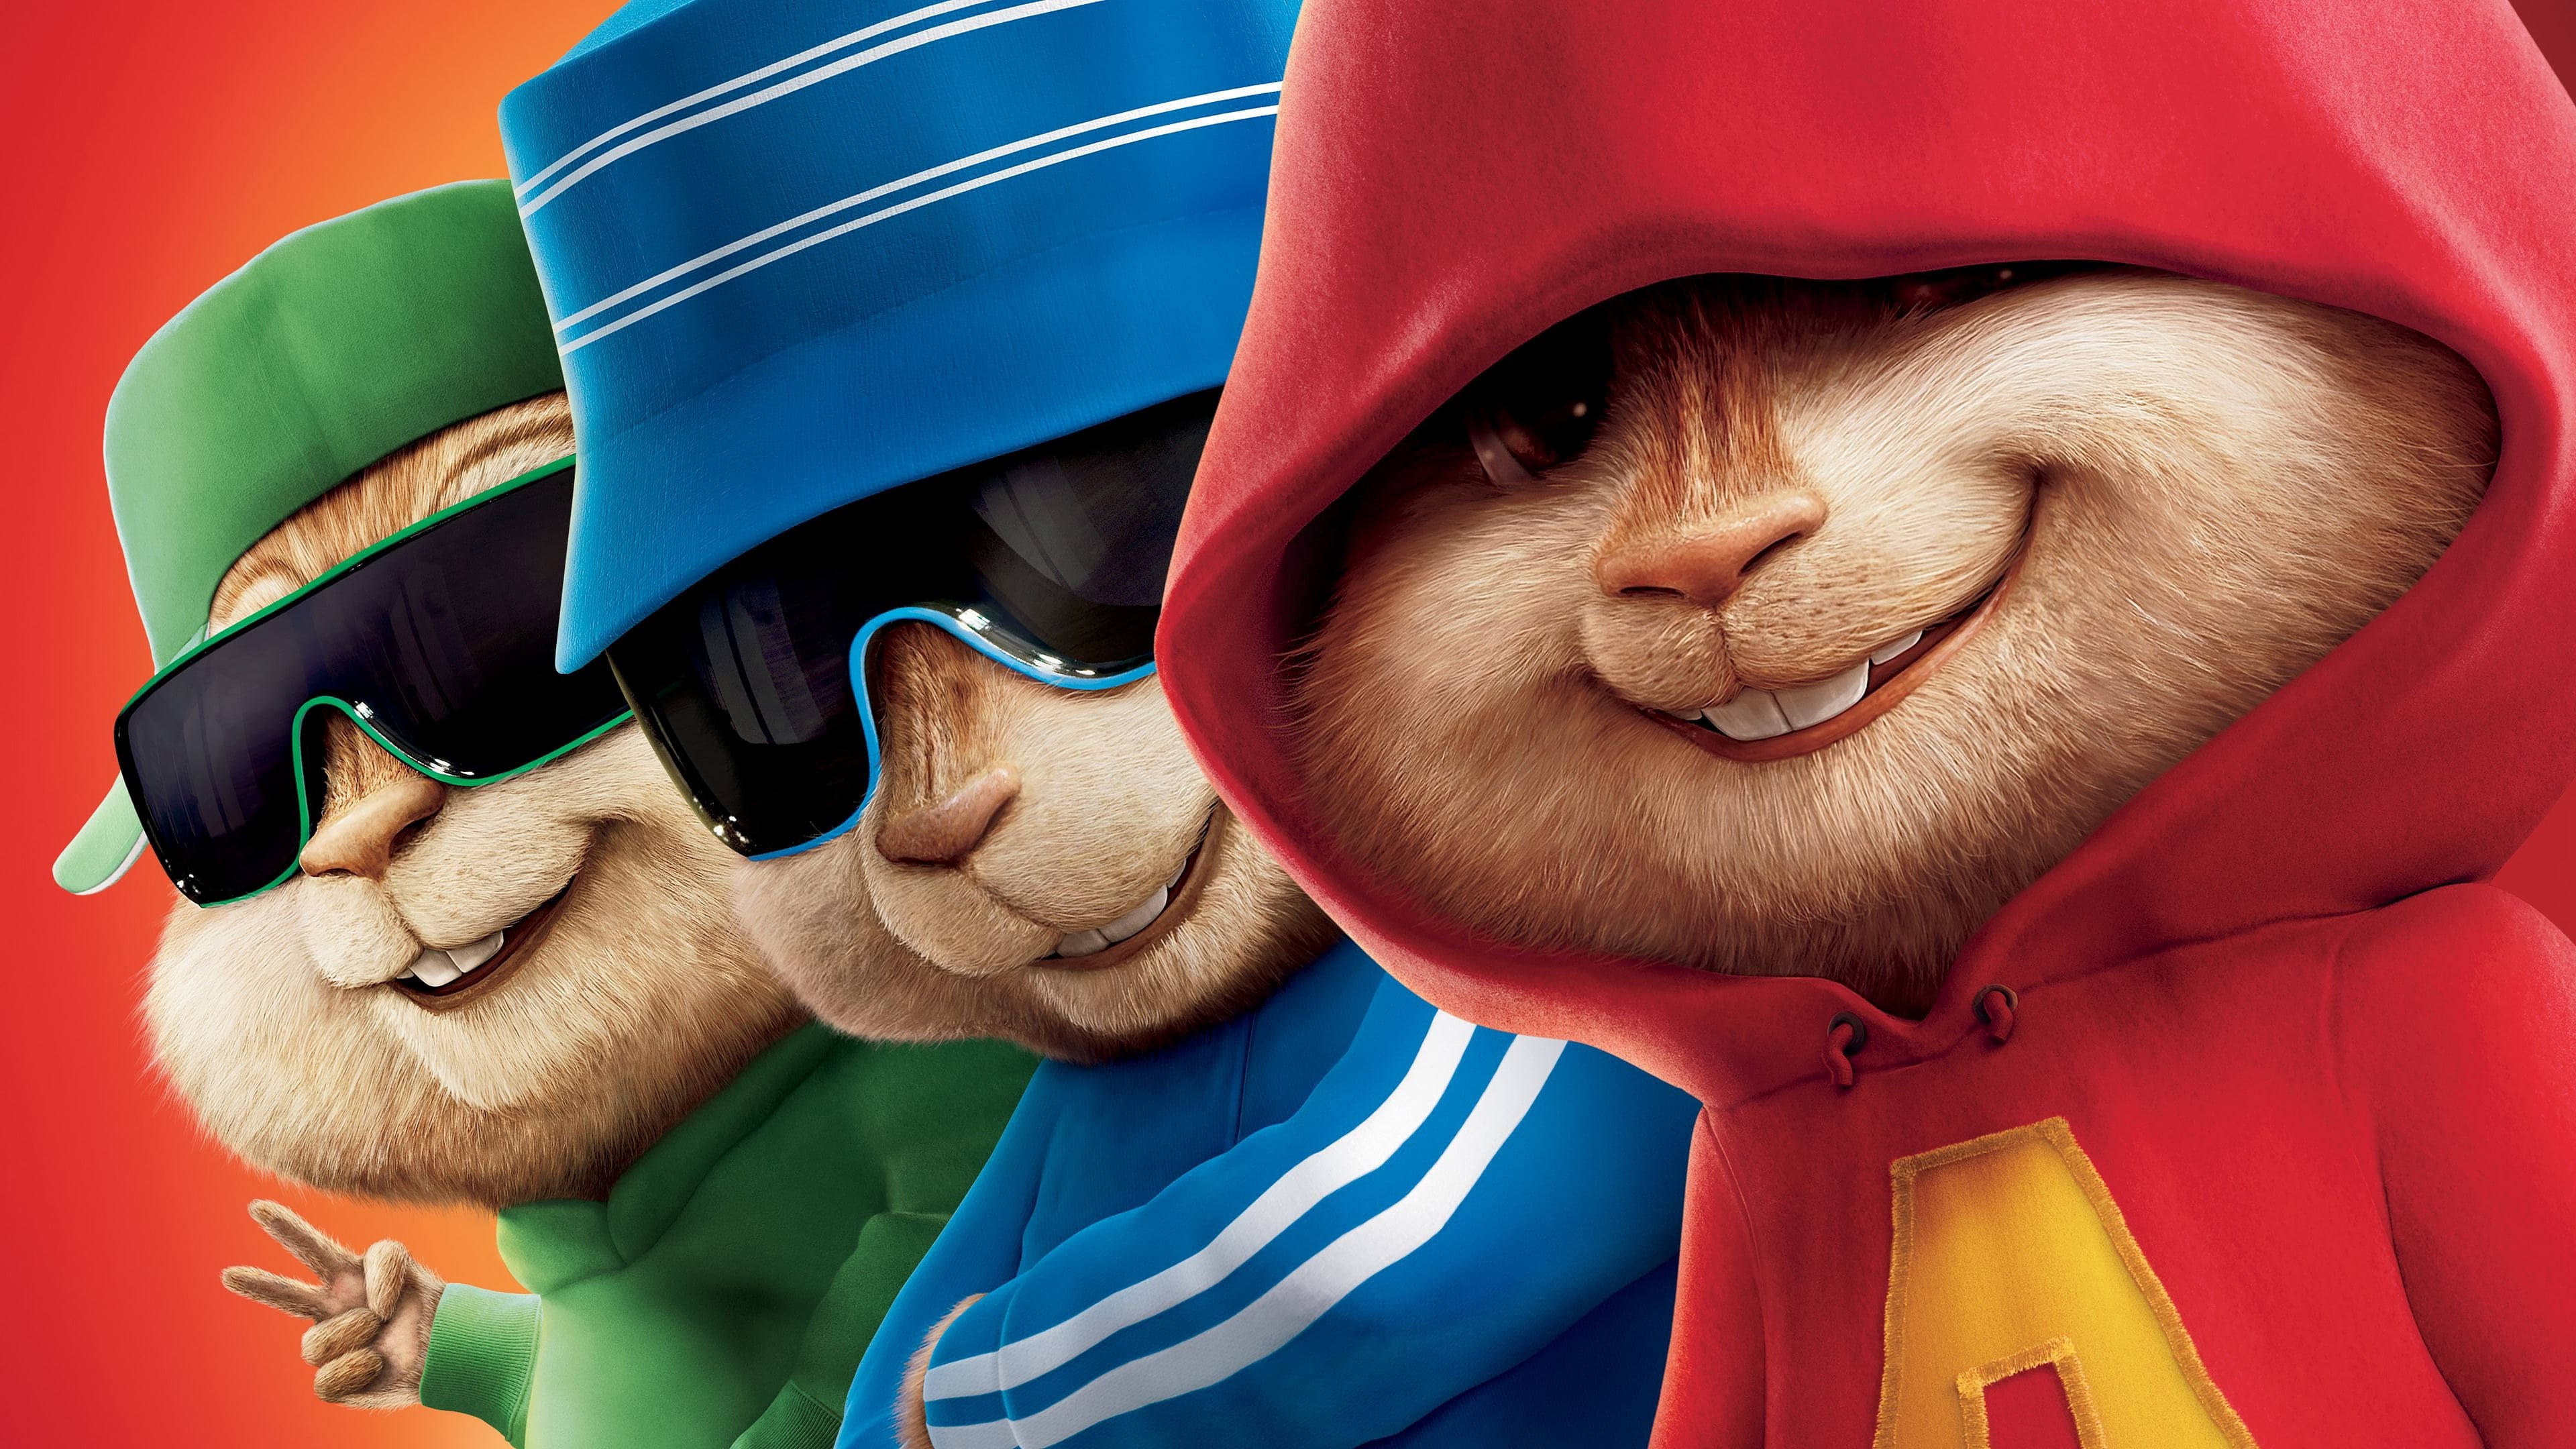 Alvin und die Chipmunks - Der Film